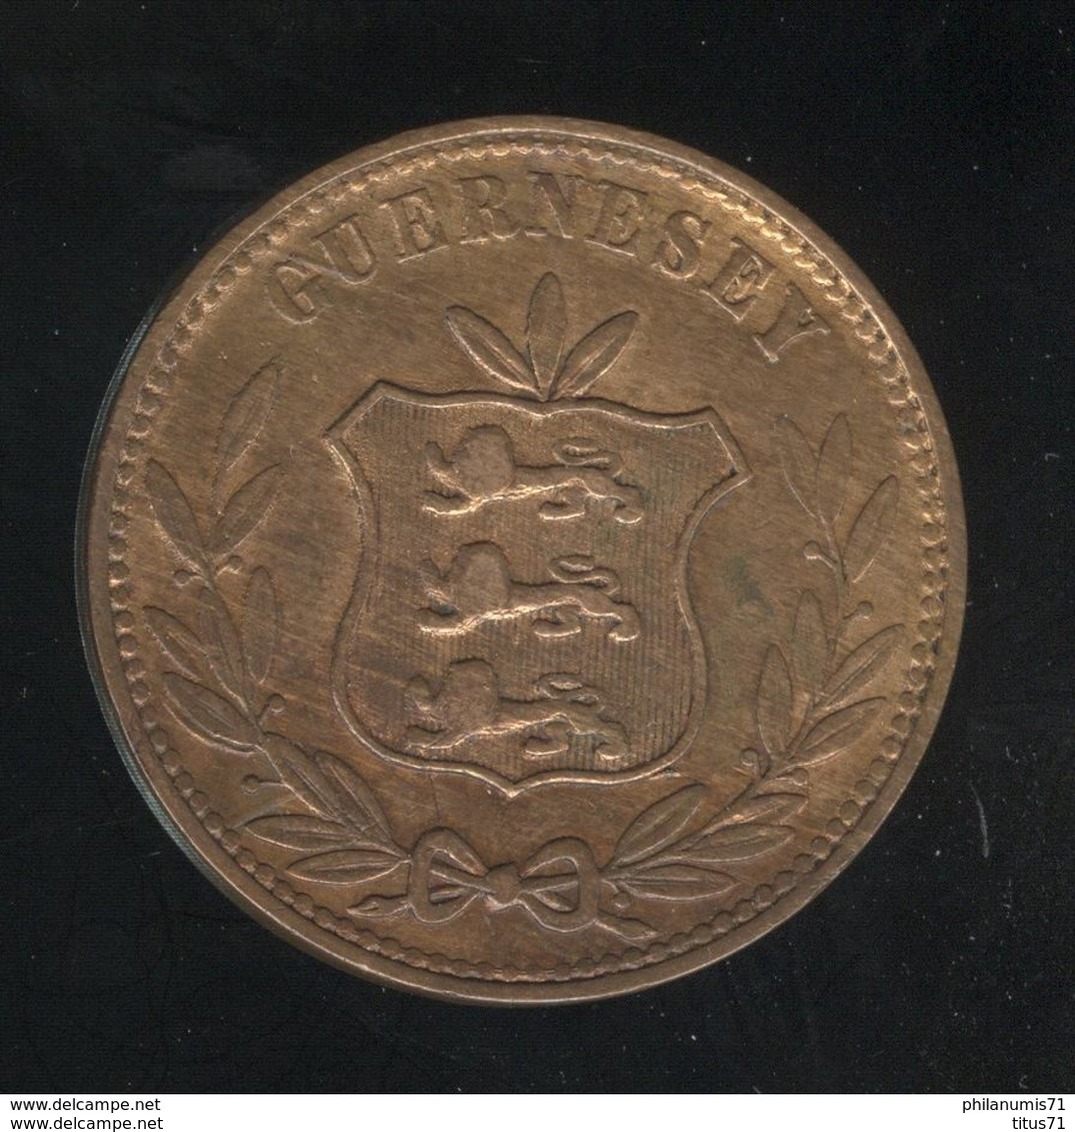 8 Doubles Guernesey 1868 TTB+ - Guernsey